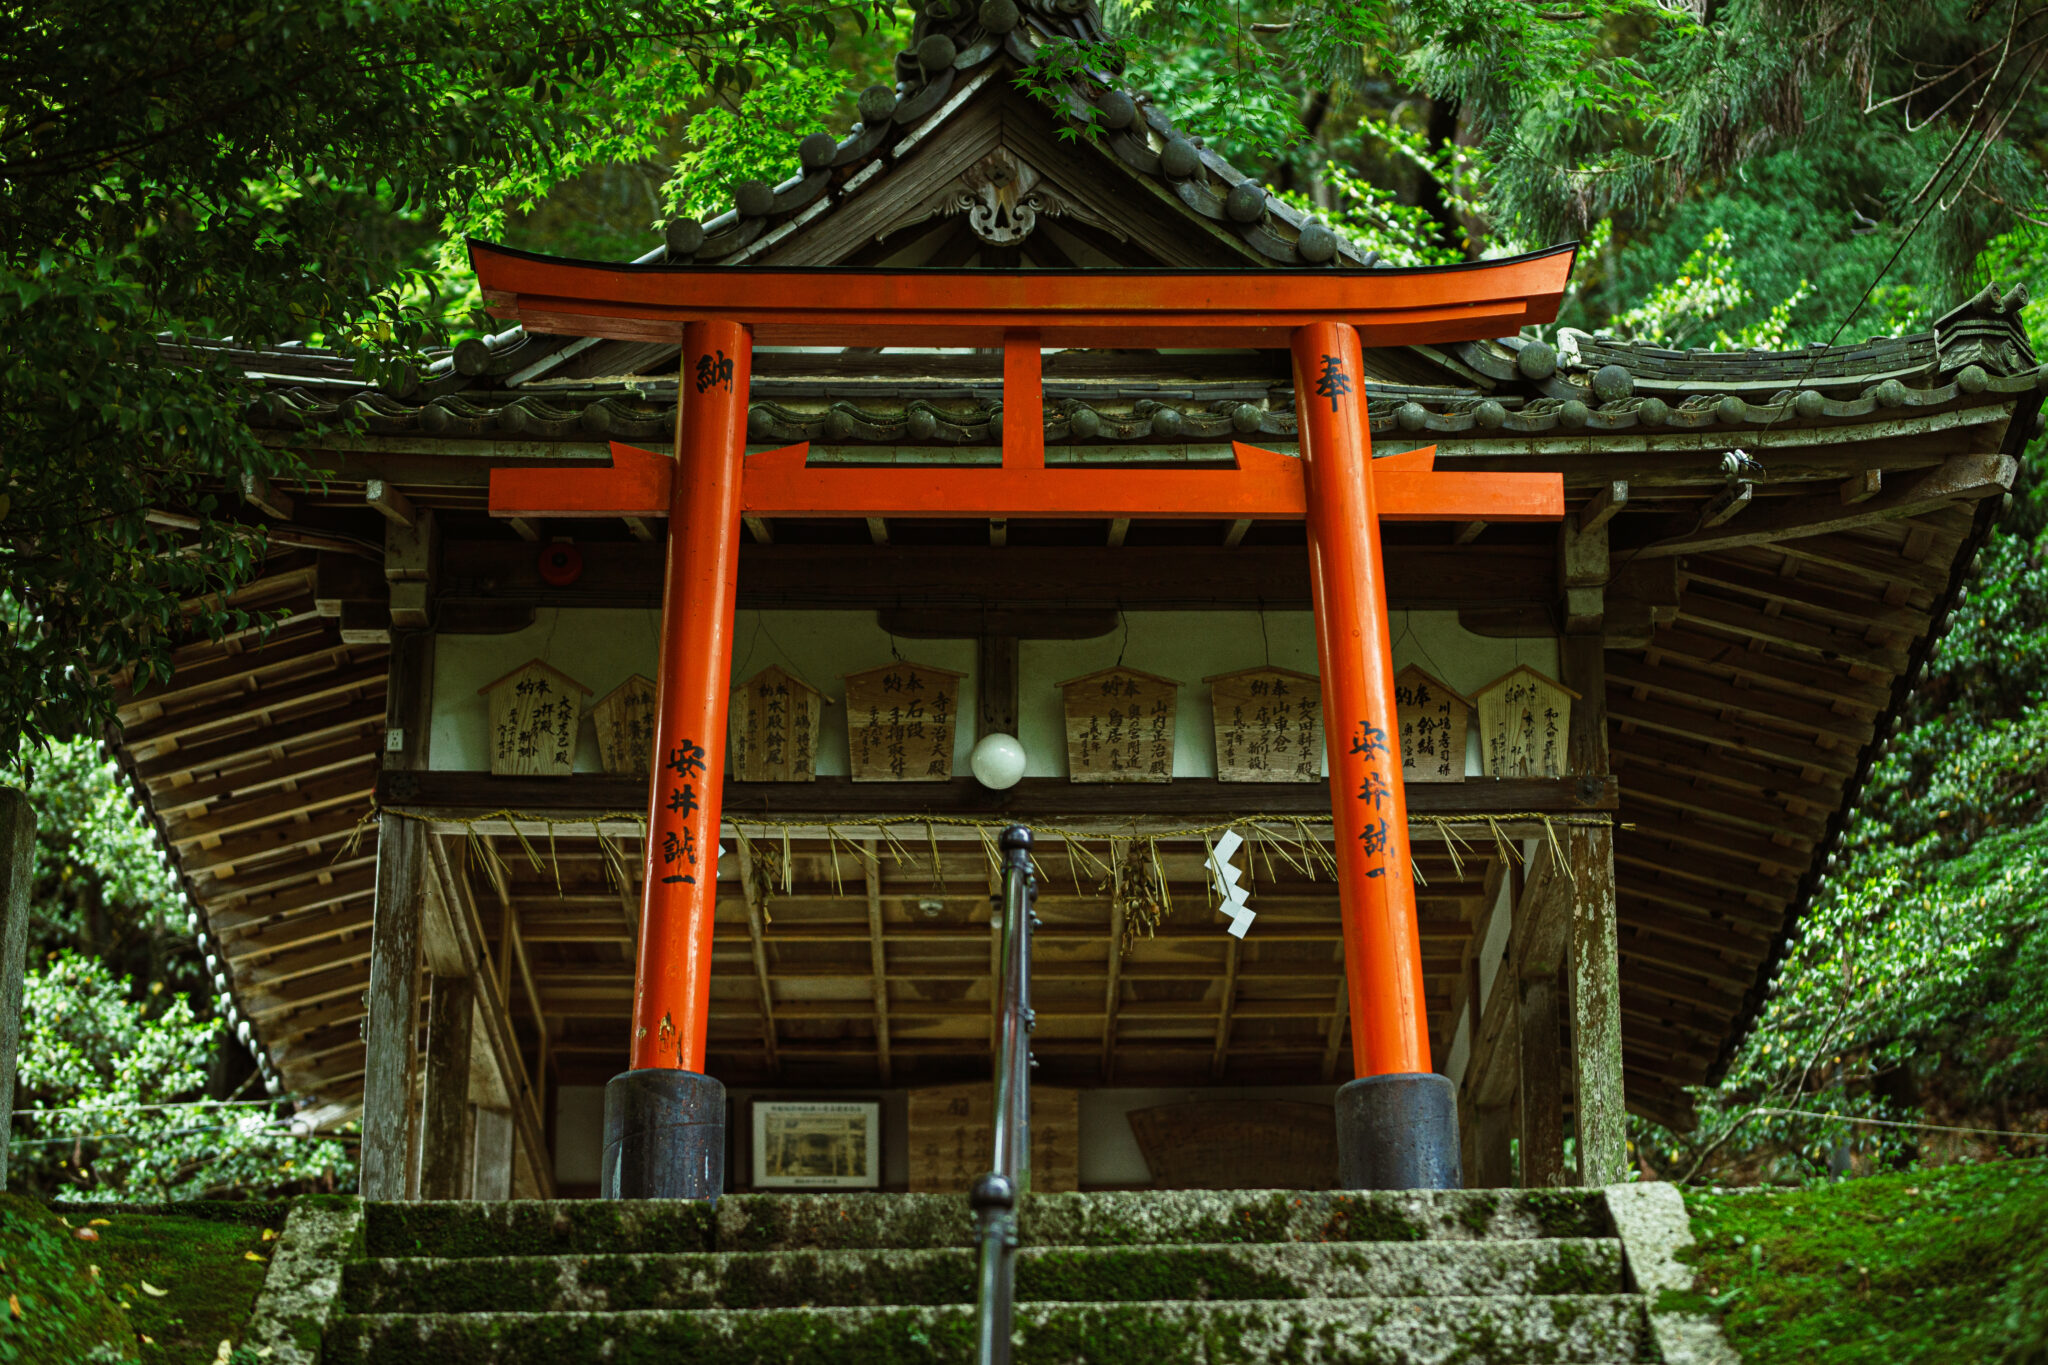 An Inari shrine near Kyoto, Japan